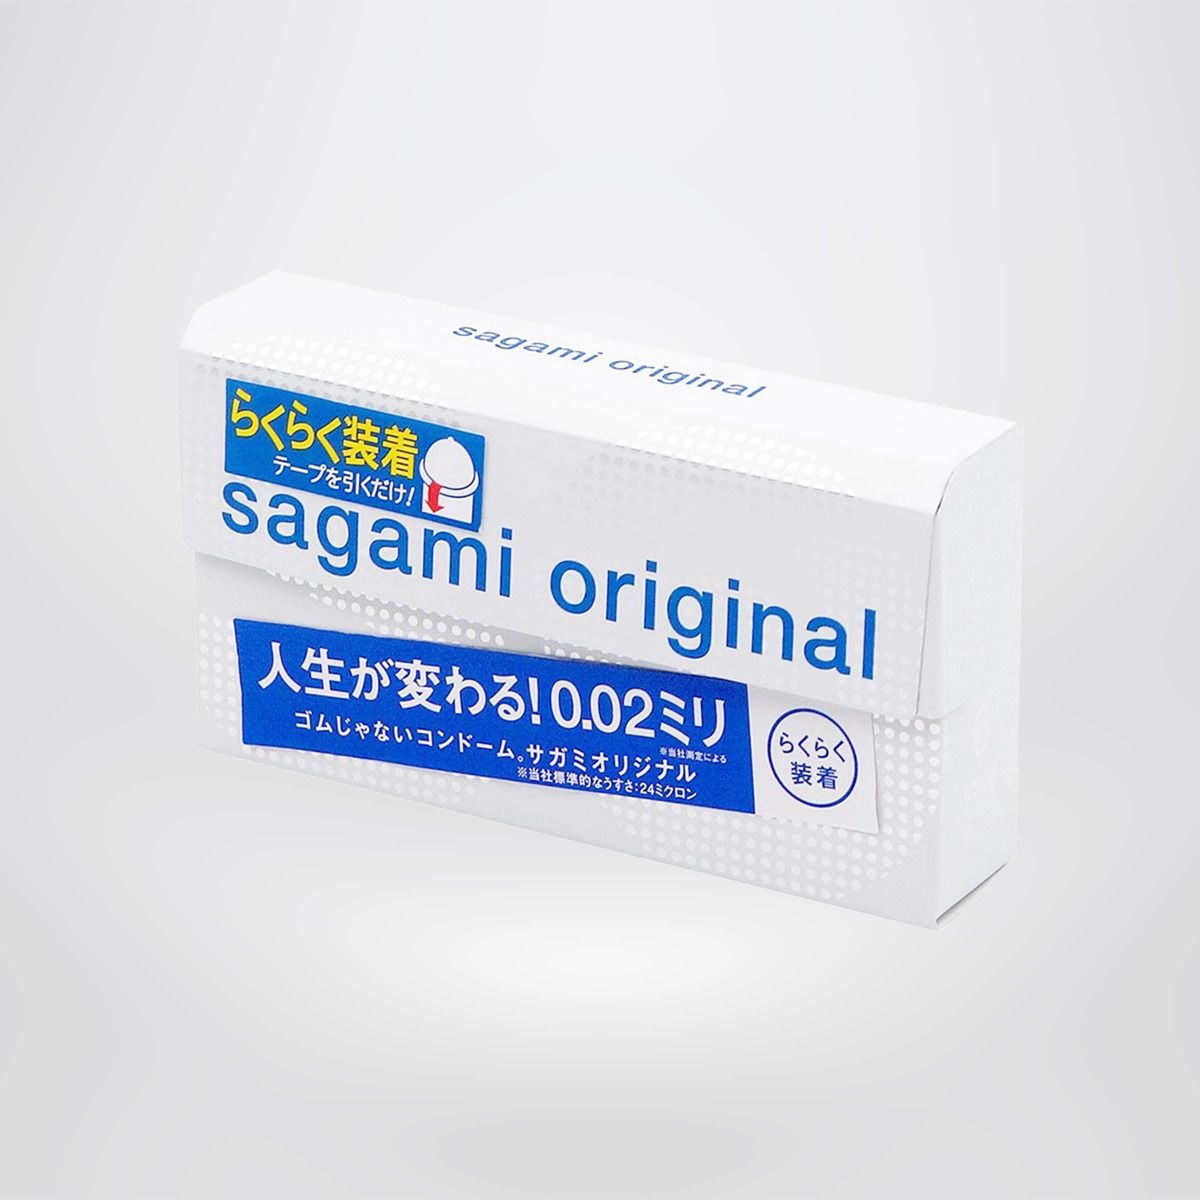 Bao cao su Sagami Original 0.02 Quick (hộp 6 chiếc) - Non latex siêu mỏng